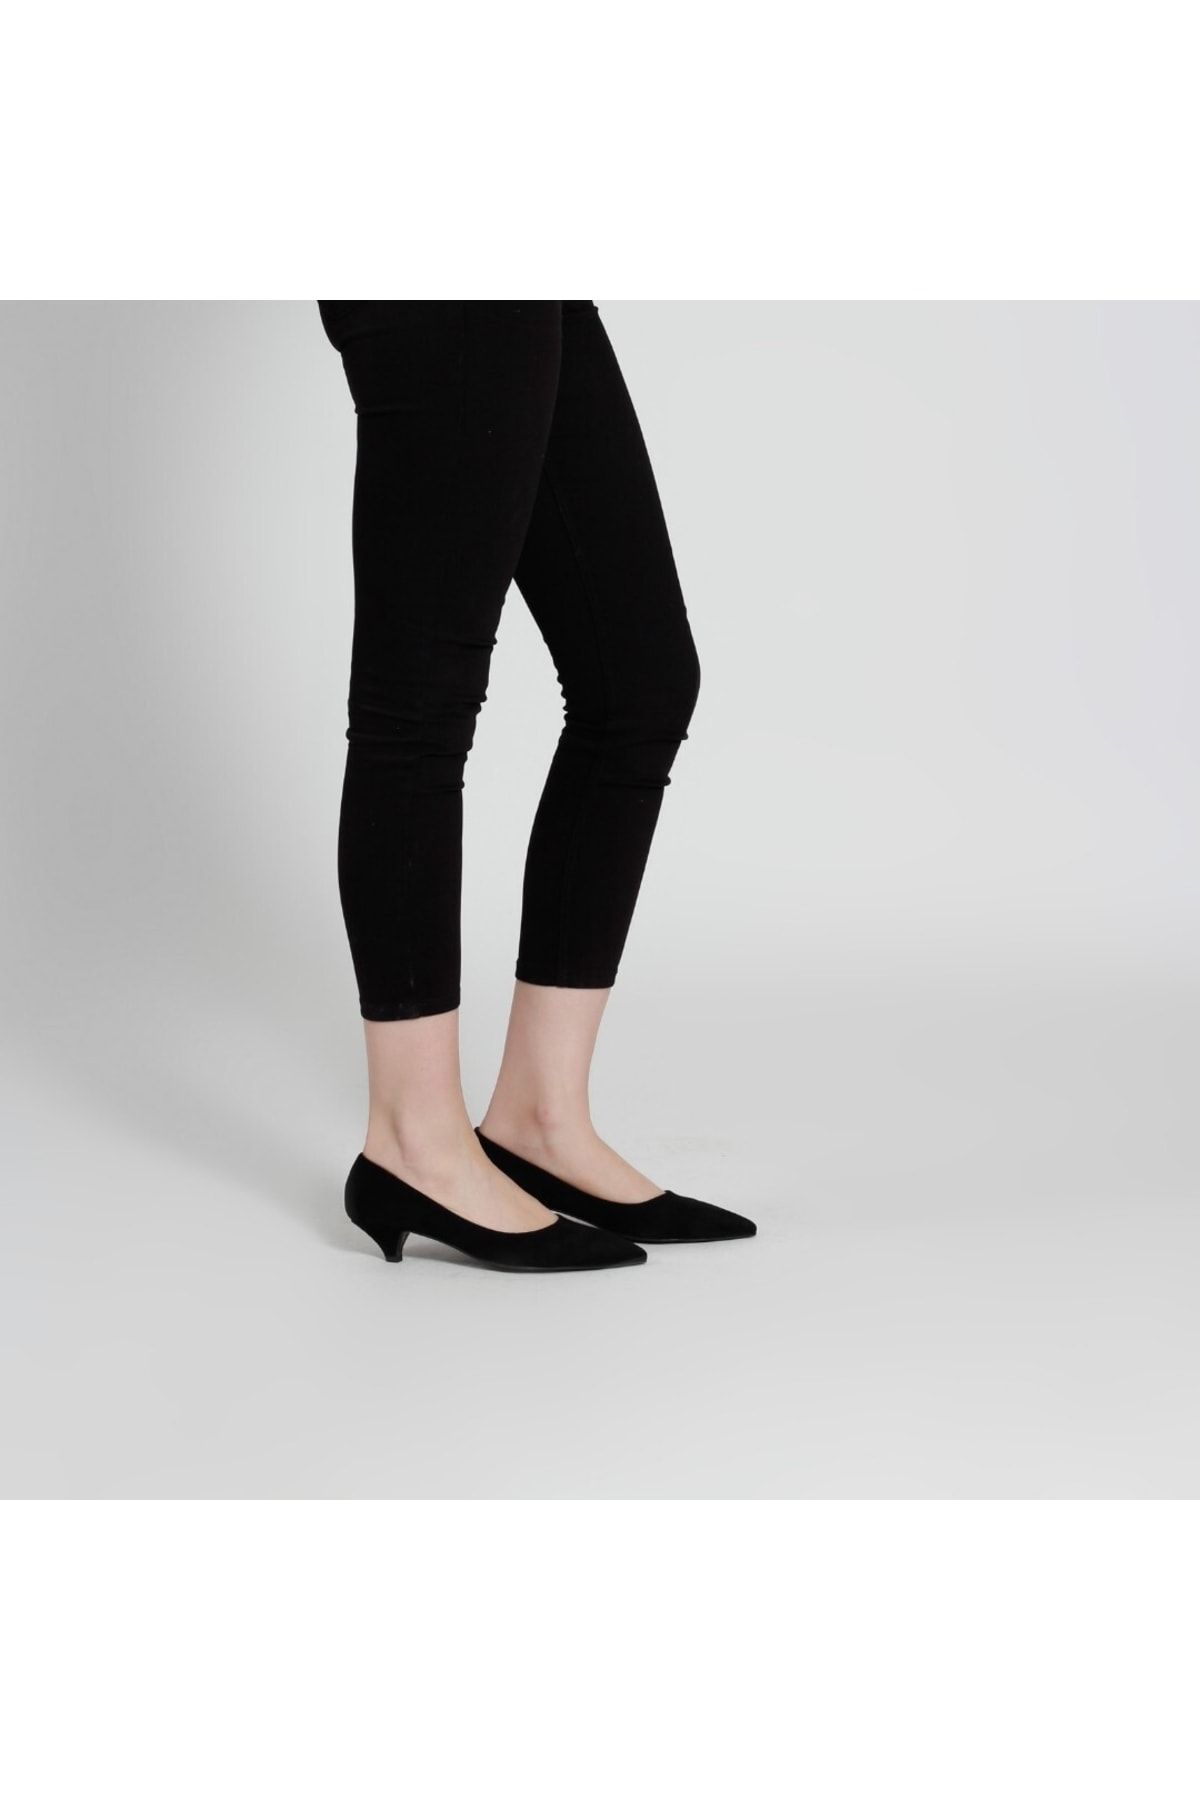 37Numara Büyük Numara Kadın Ayakkabısı 41-42-43-44 Numara Siyah Stiletto